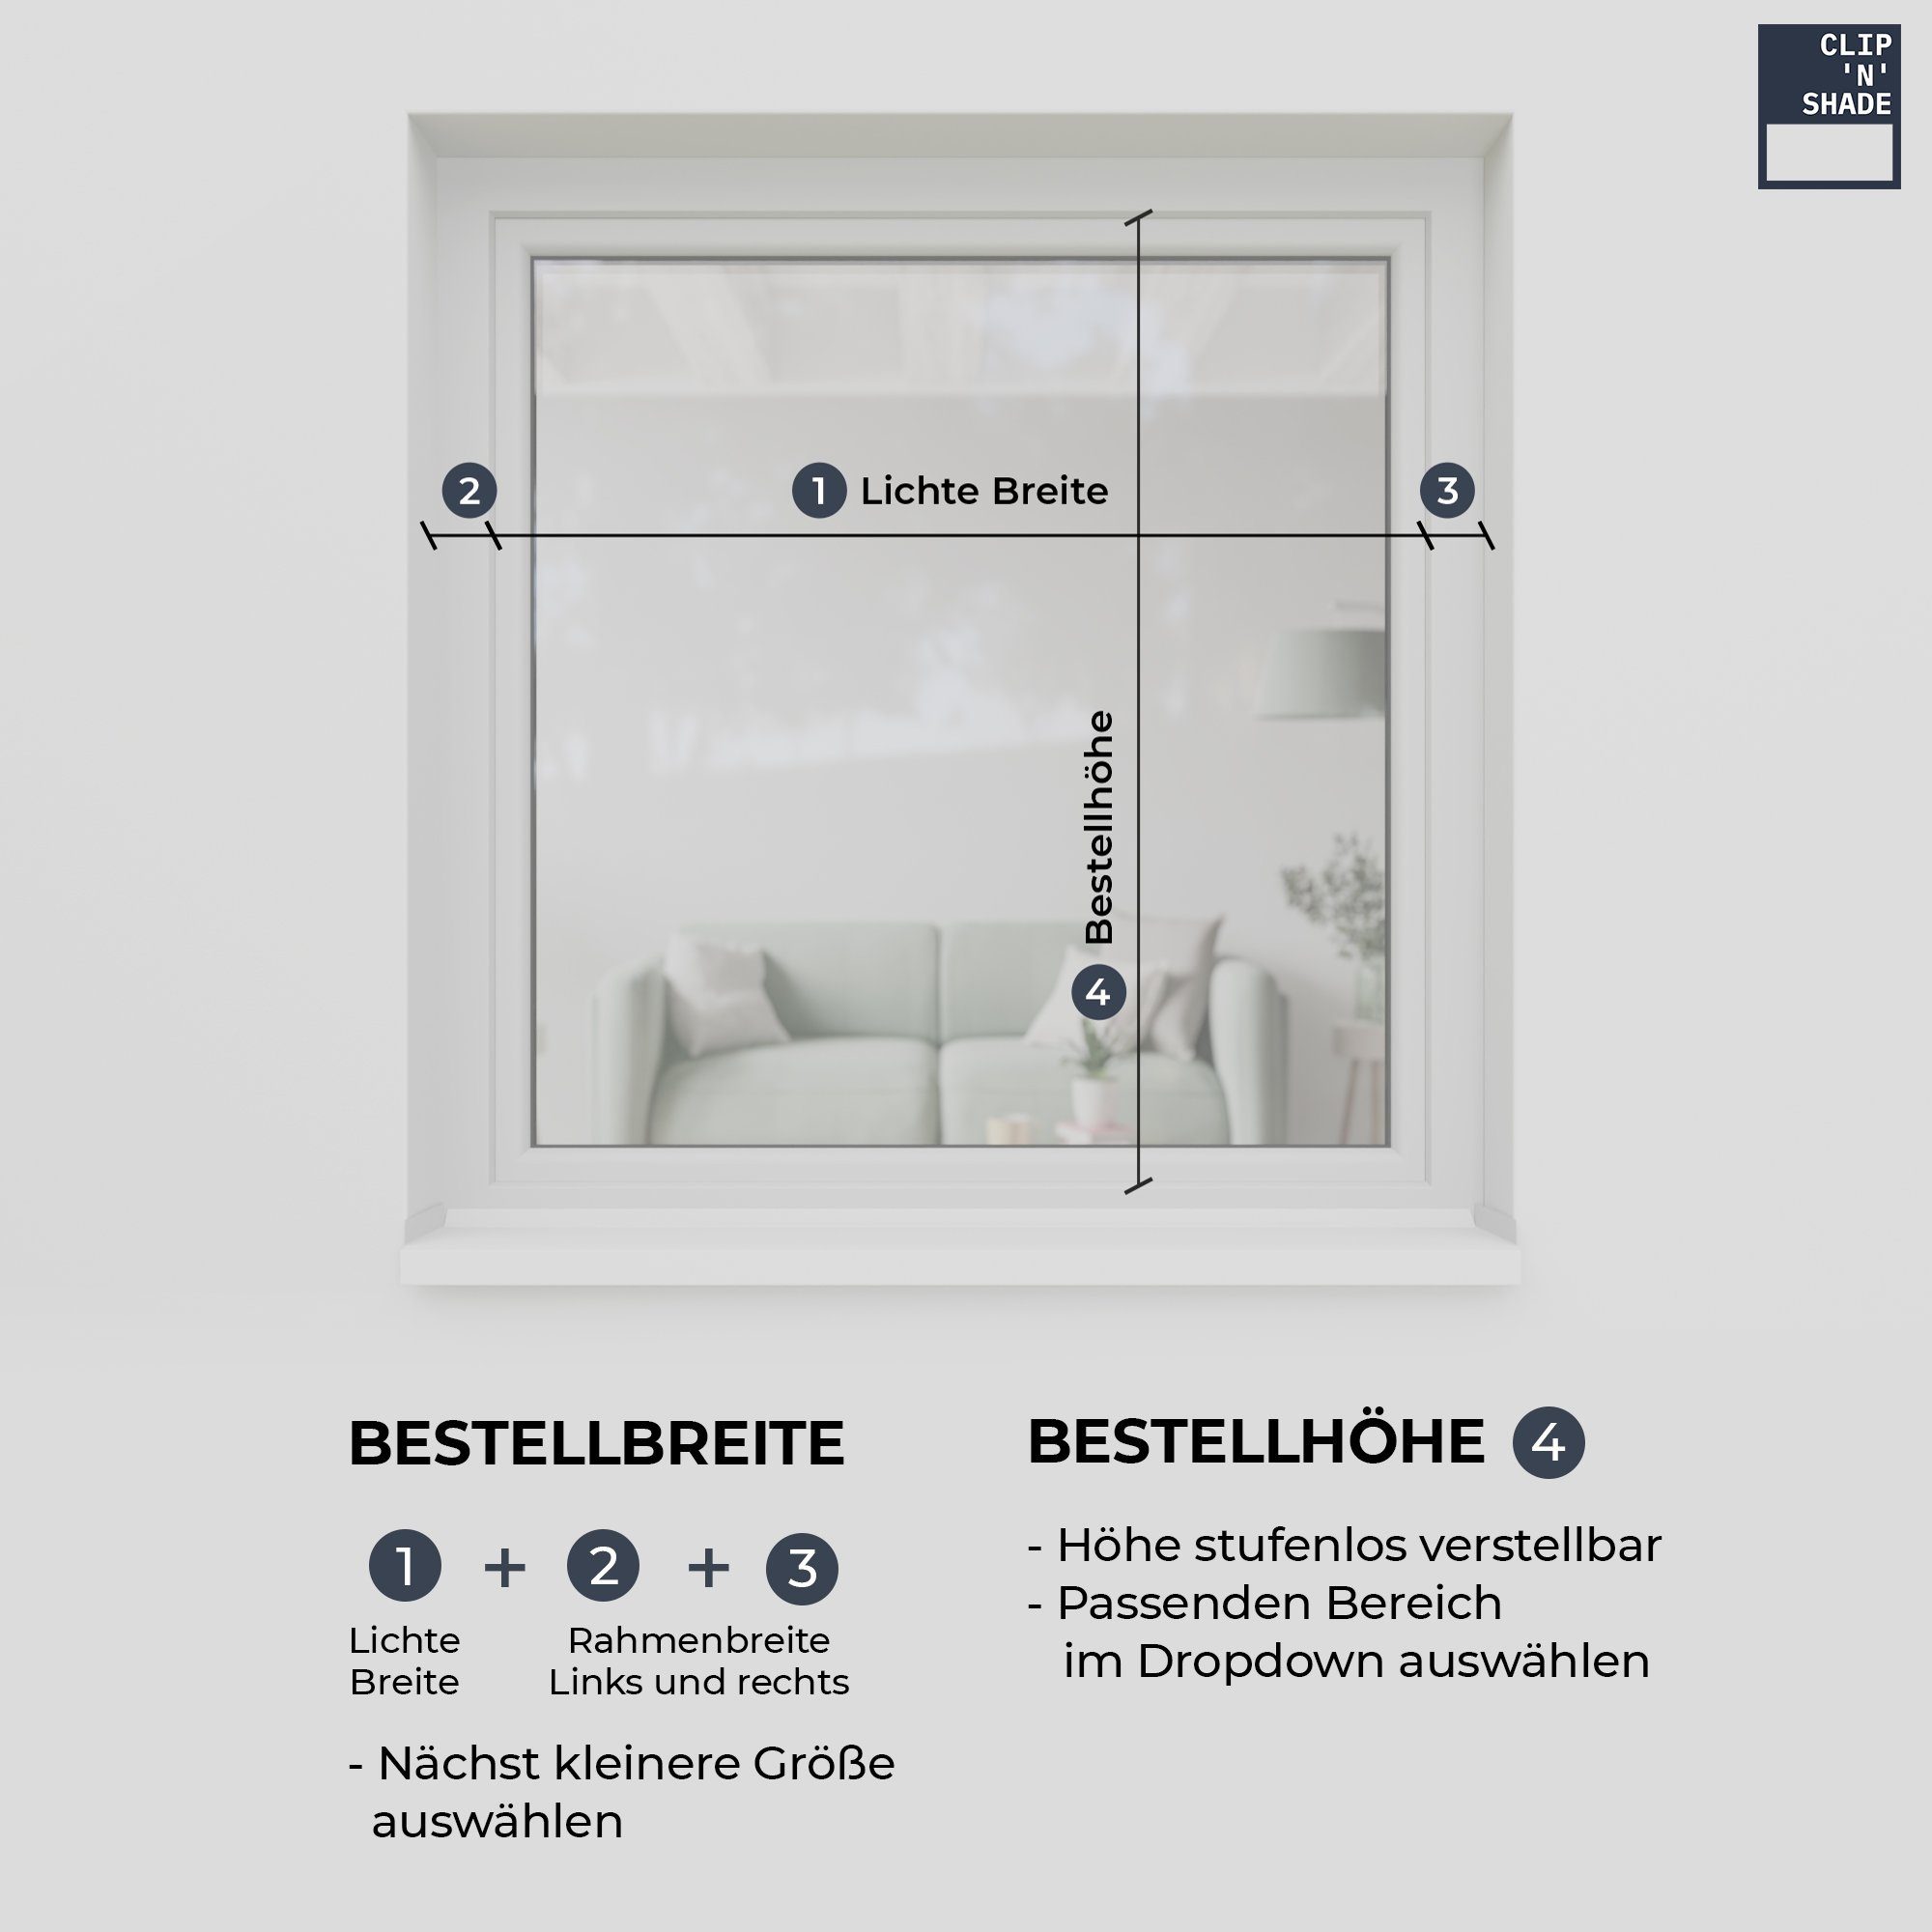 Aussenrollo CLIP`N`SHADE, Außen hochwertige Weiß Rollo Balkontüren, am Aluminiumprofile für Fenster, Klemmmontage, CLIP`N`SHADE